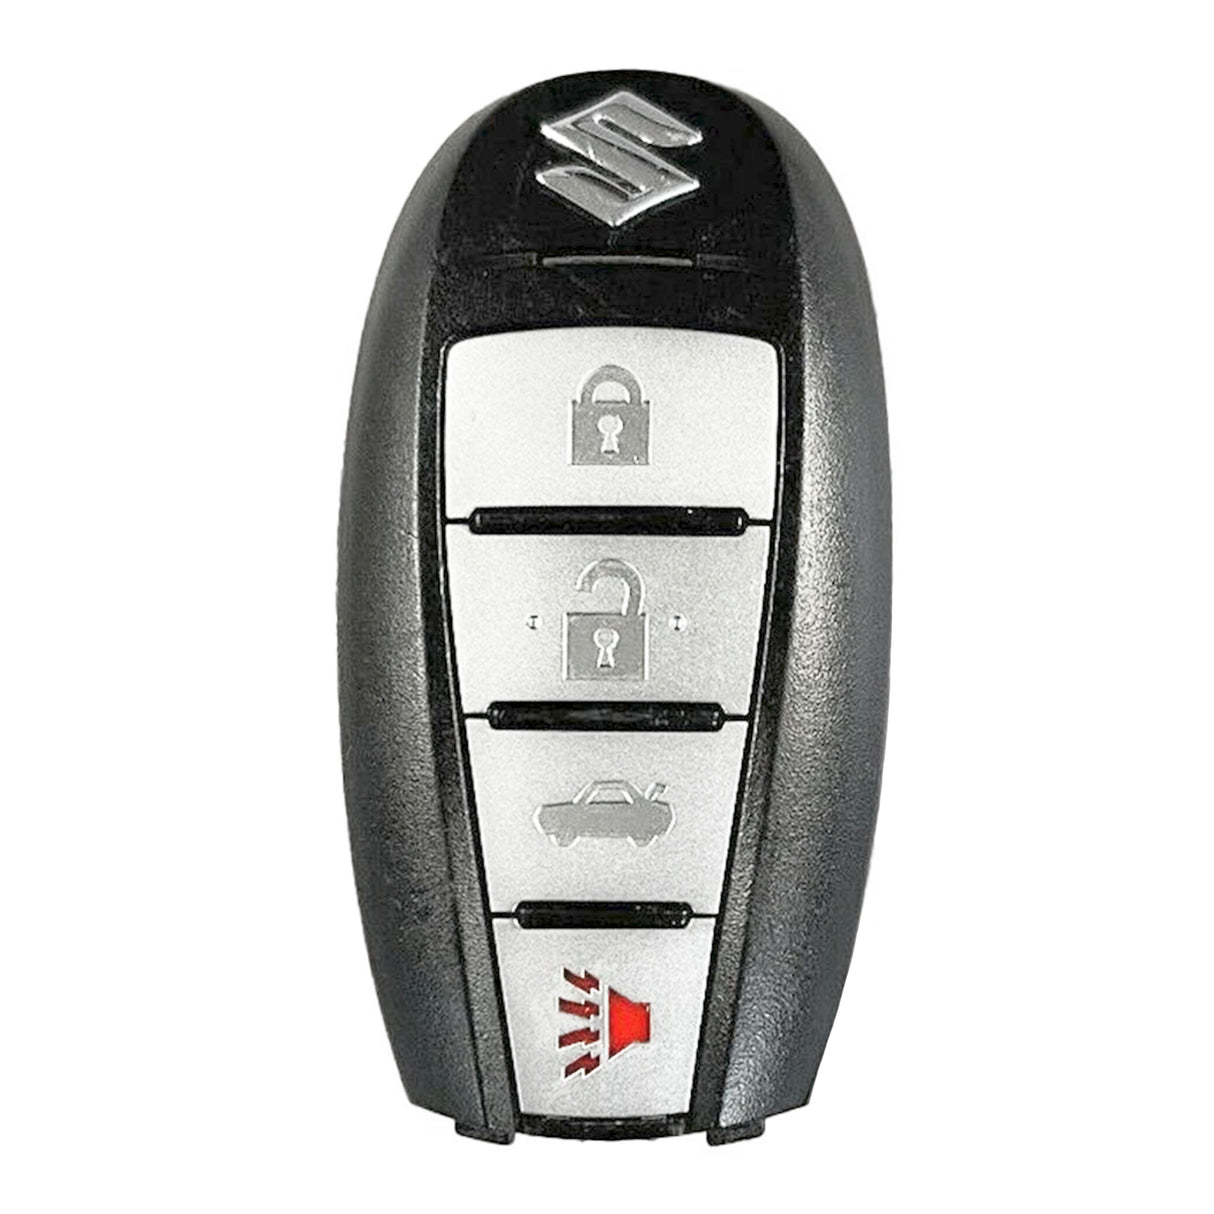 2010-2013 Suzuki Kizashi 4B Trunk Smart Key KBRTS009